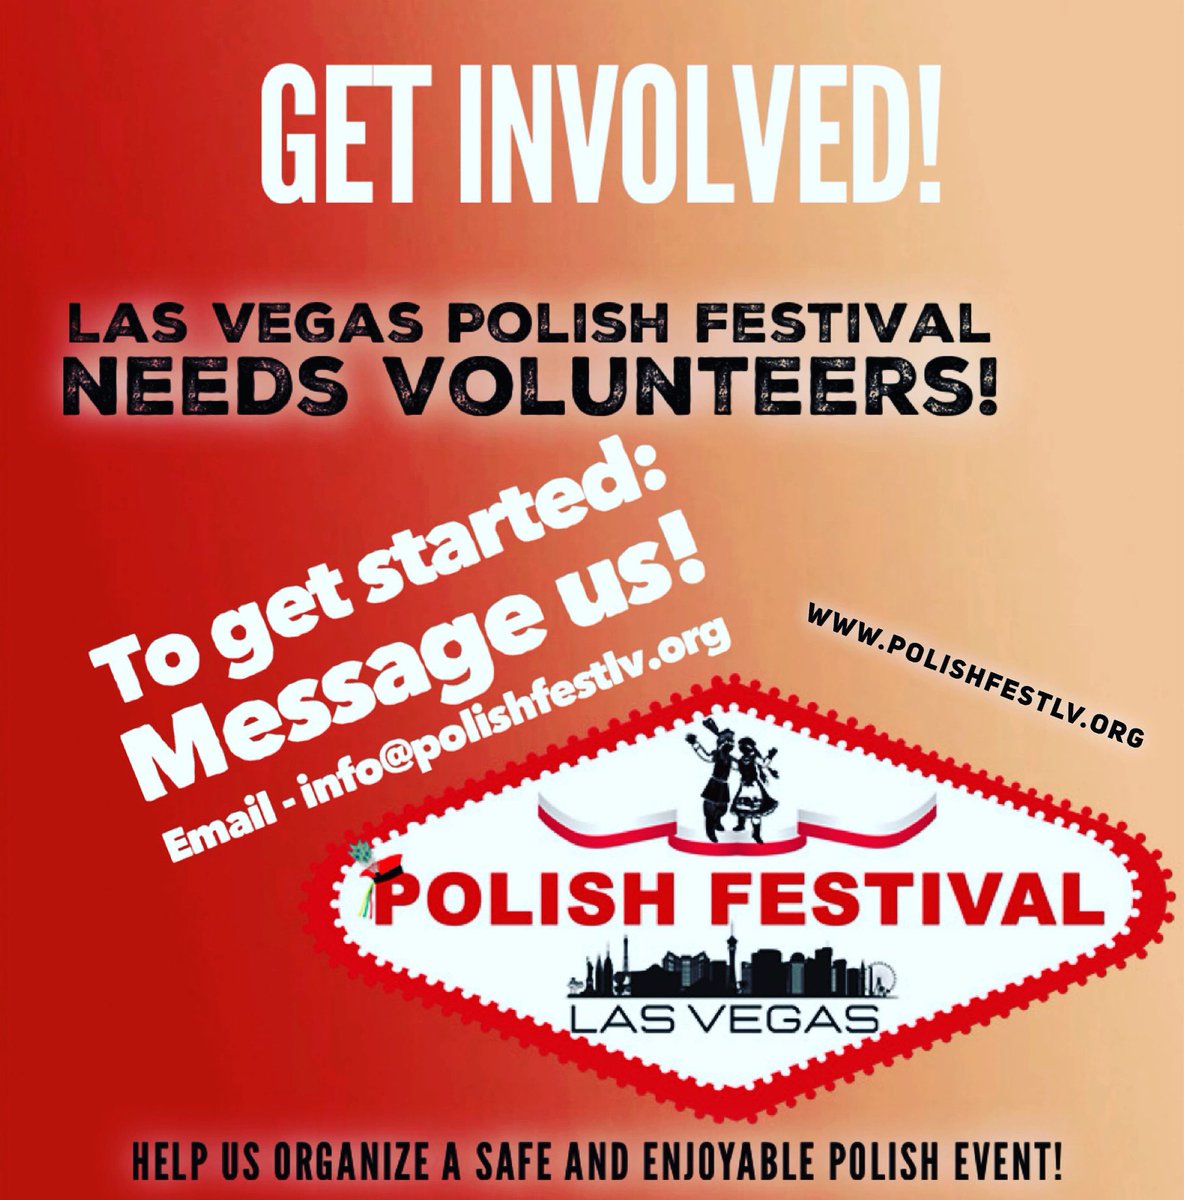 We need YOU at the LV Polish Festival!🇵🇱 #lvpolishfestival #polishfestlv #lasvegas #poland #polishfest #polishfestival #polska #lasvegaslocals #folkdance #polishculture #polishfood #polishfolk #lasvegasevents #lasvegasentertainment #lasvegasfood #volunteers